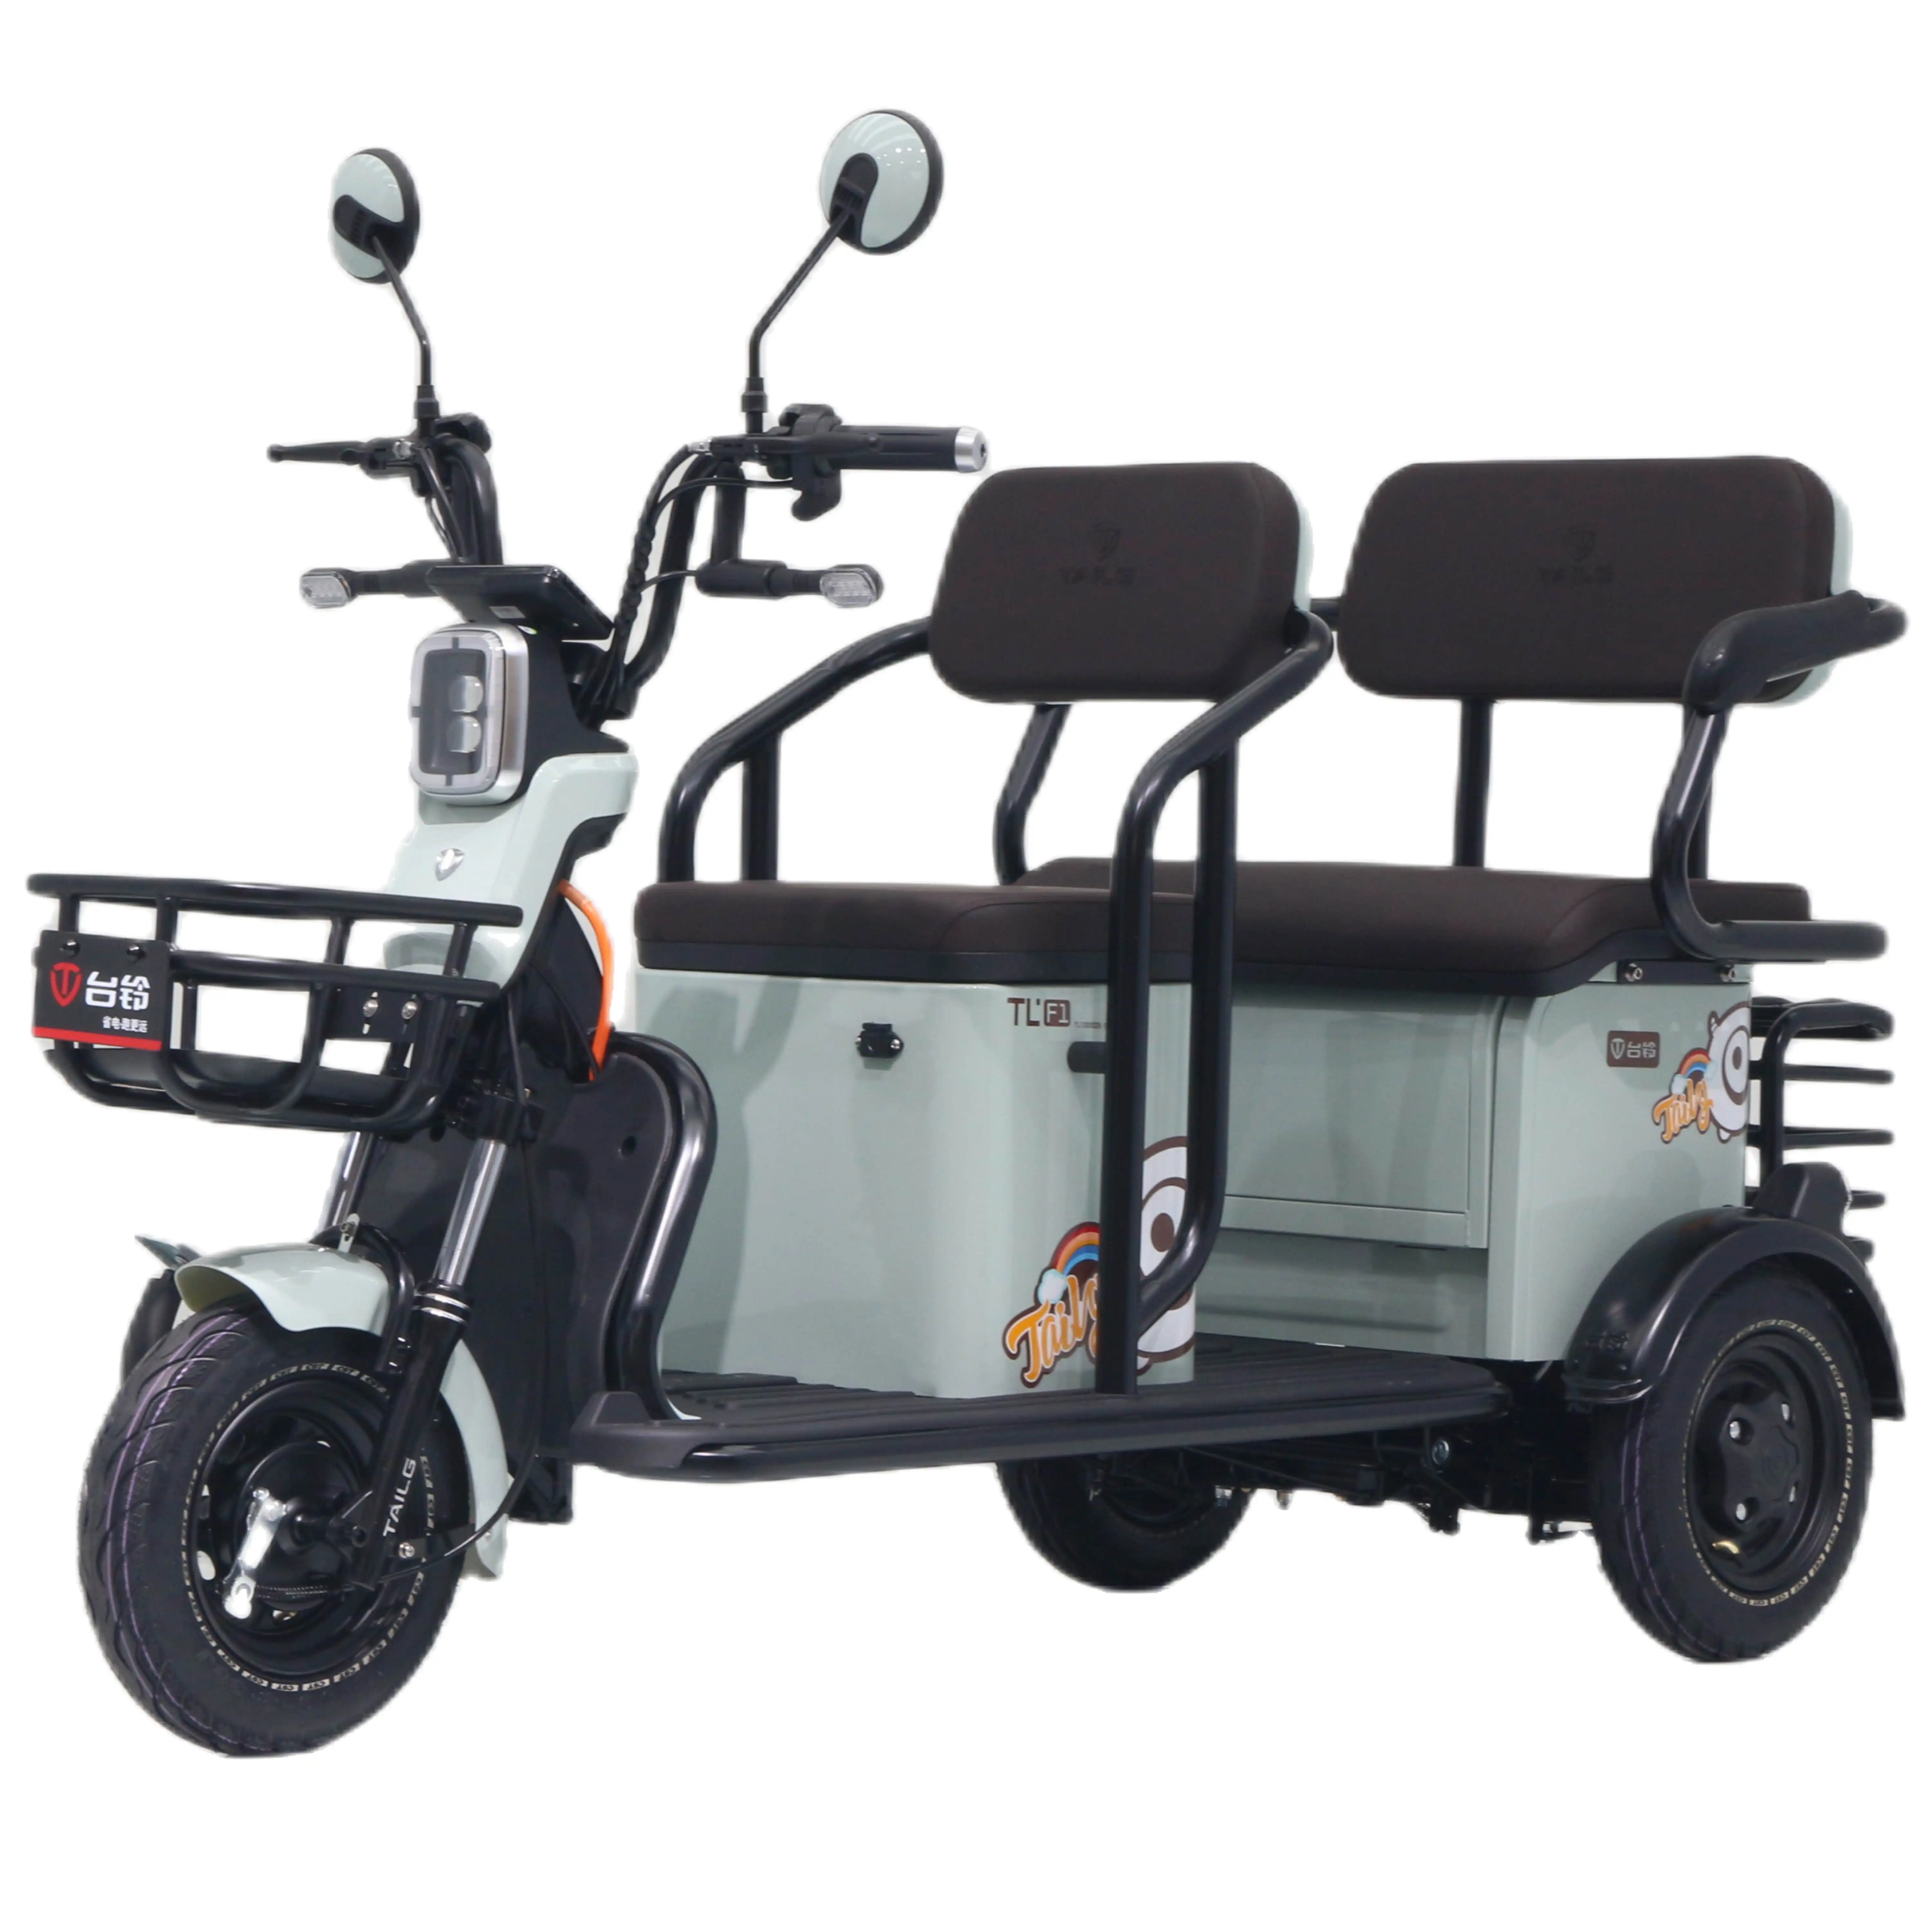 Tailg usine Offre Spéciale chinois deux personnes sièges batterie au plomb E pousse-pousse pour tricycle électrique